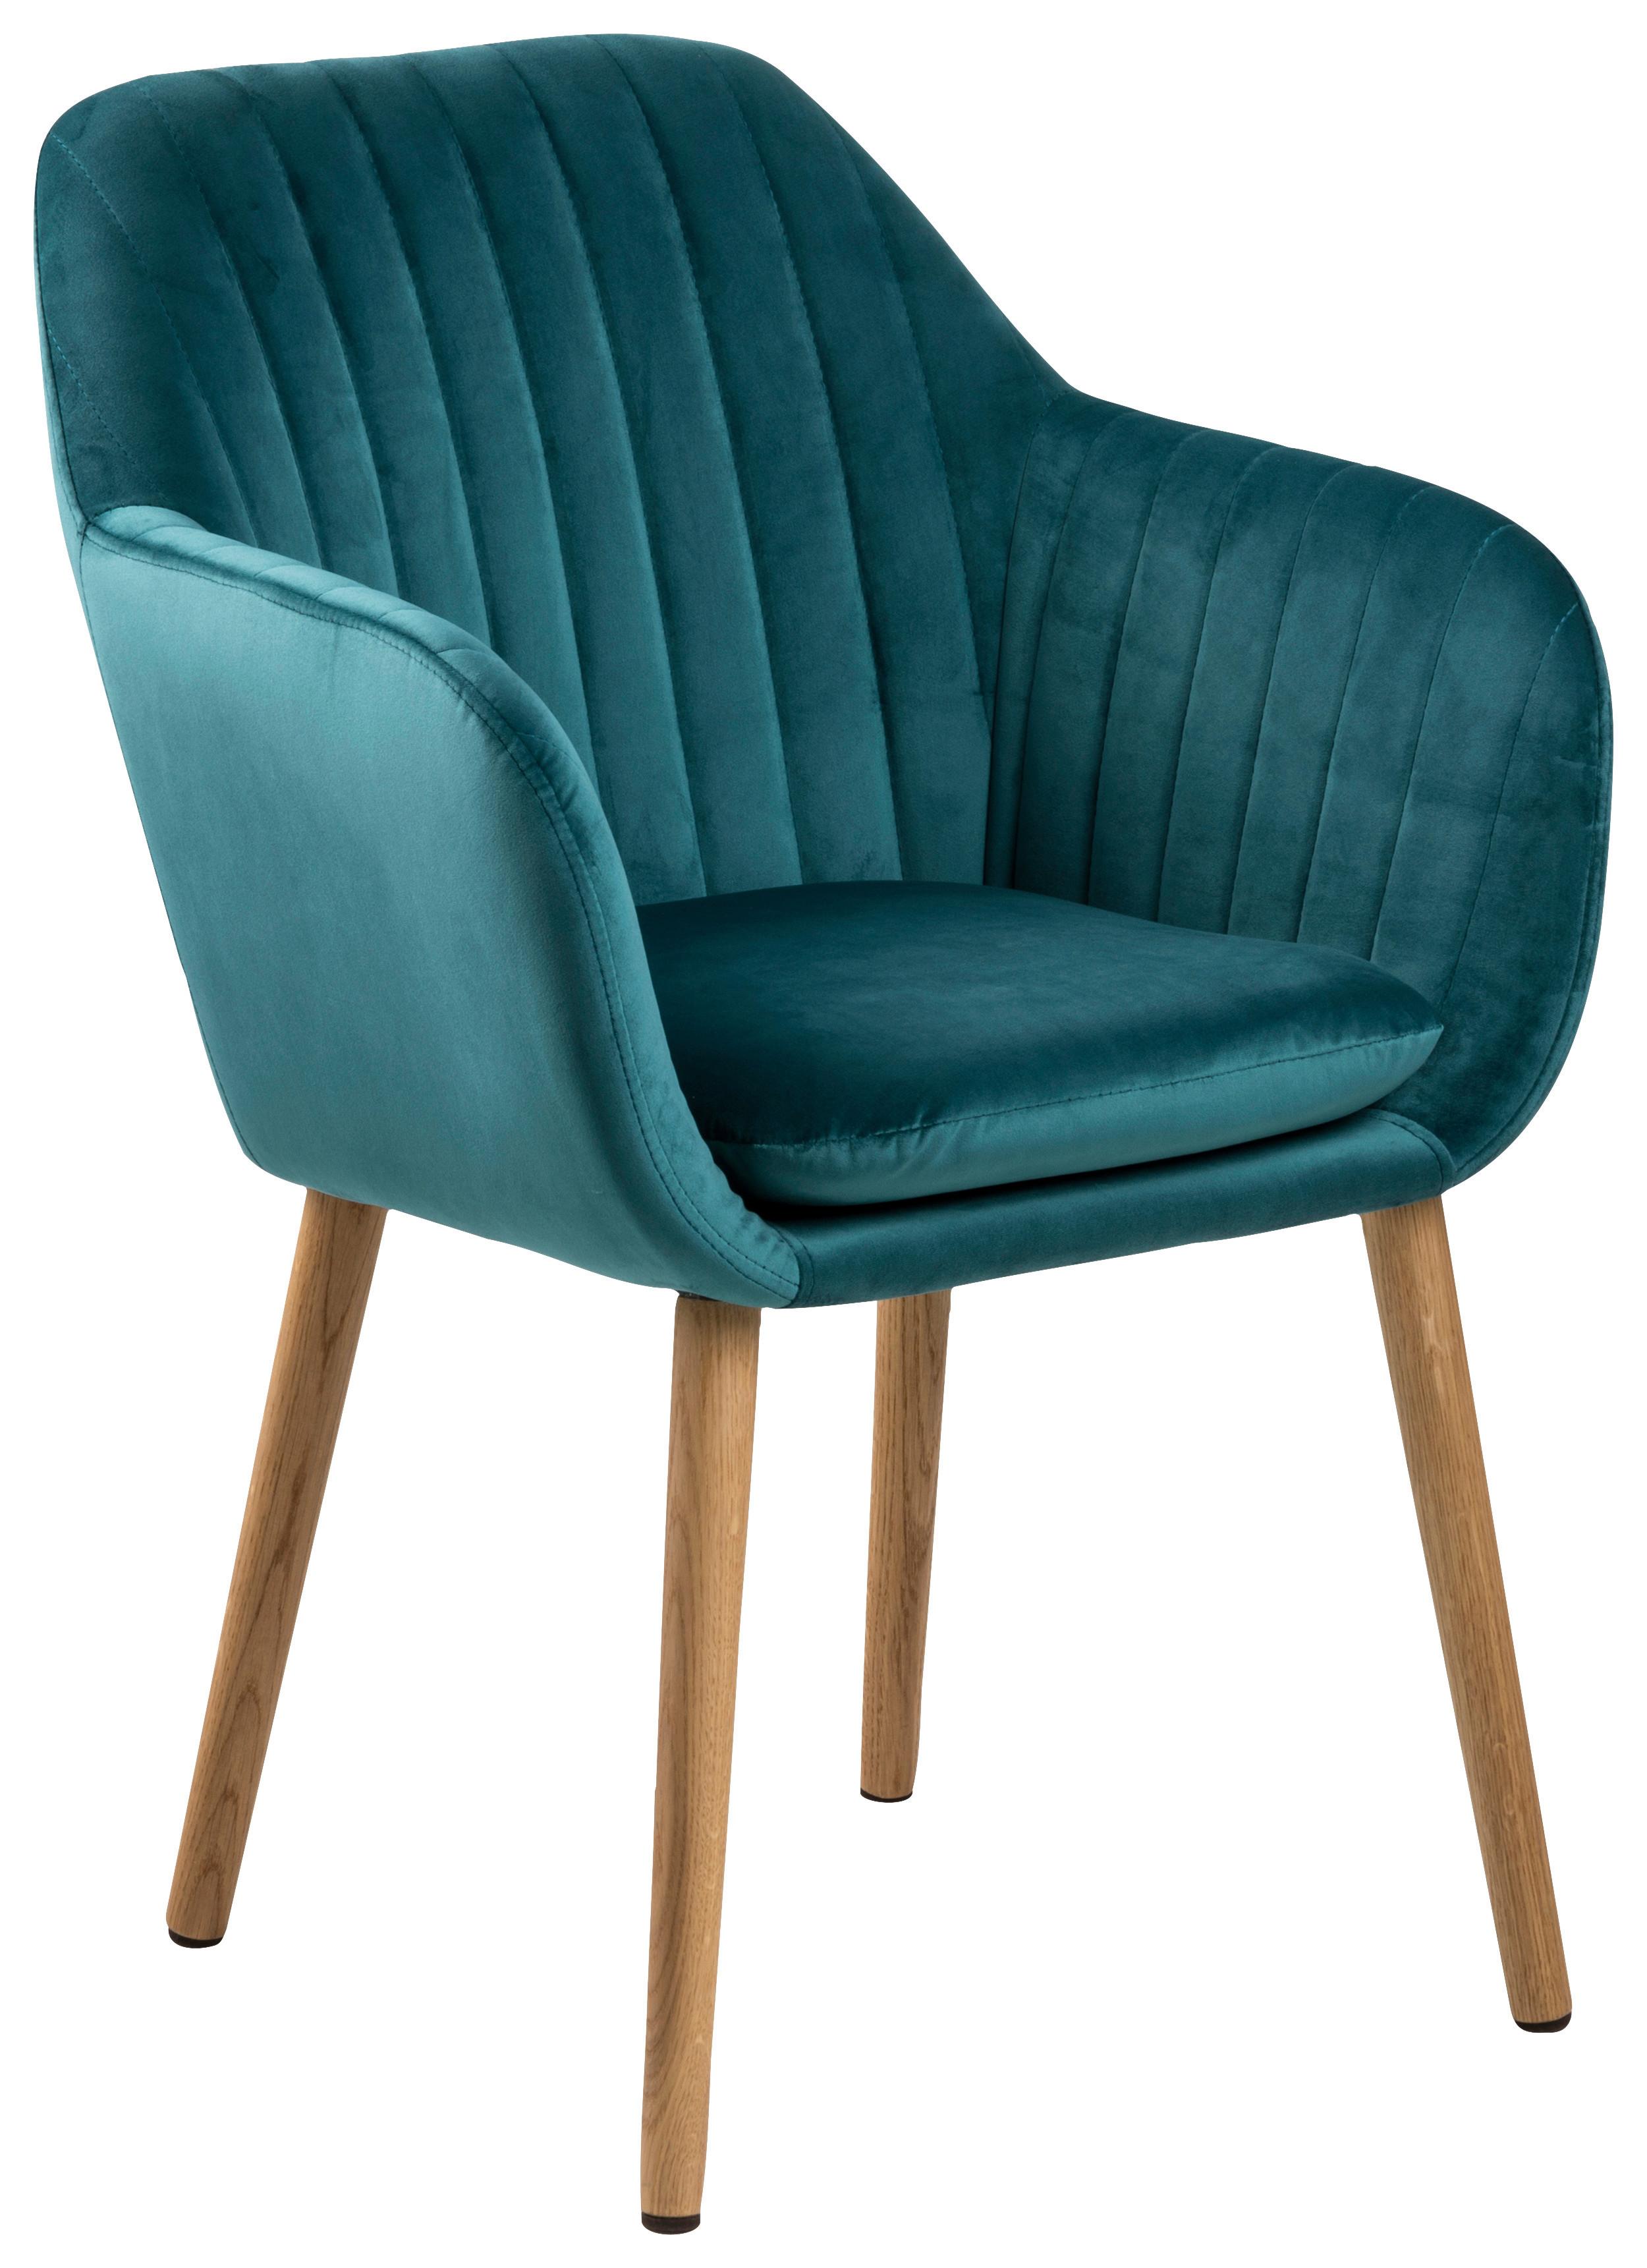 Židle S Područkami Emilia Smaragdově Zelená - smaragdově zelená, Design, dřevo/textil (57/83/59cm) - Carryhome